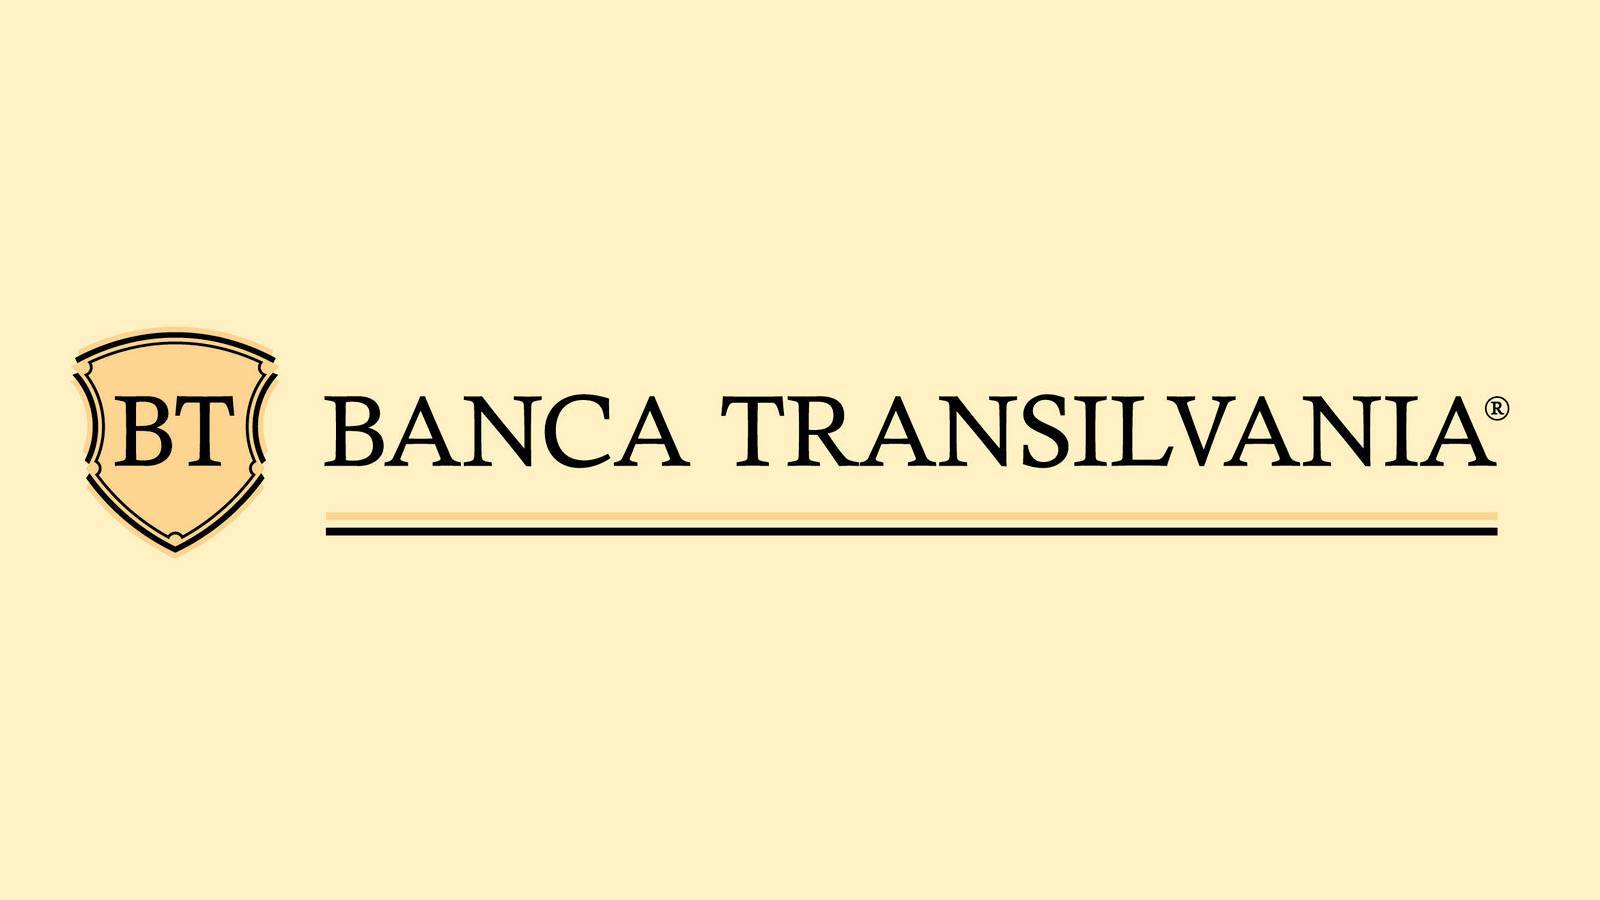 Decisione BANCA Transilvania annunciata UFFICIALMENTE I clienti devono saperlo